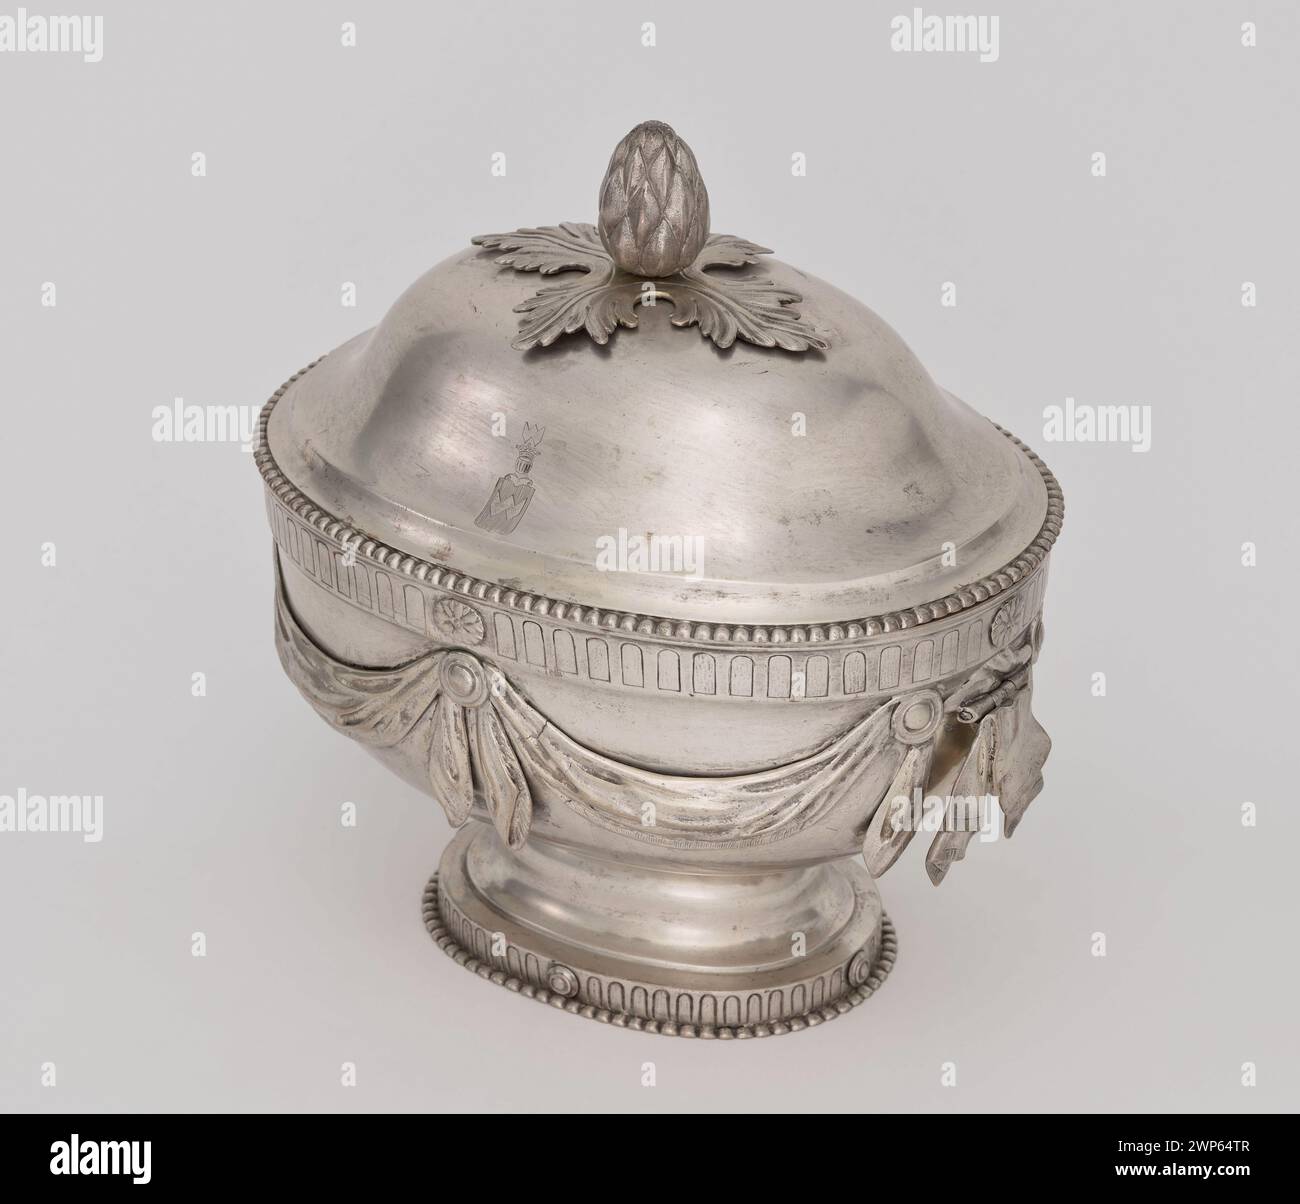 Soup vase; Stanecki, Szymon (1746-1813); 1790-1795 (1790-00-00-1795-00-00); Stock Photo